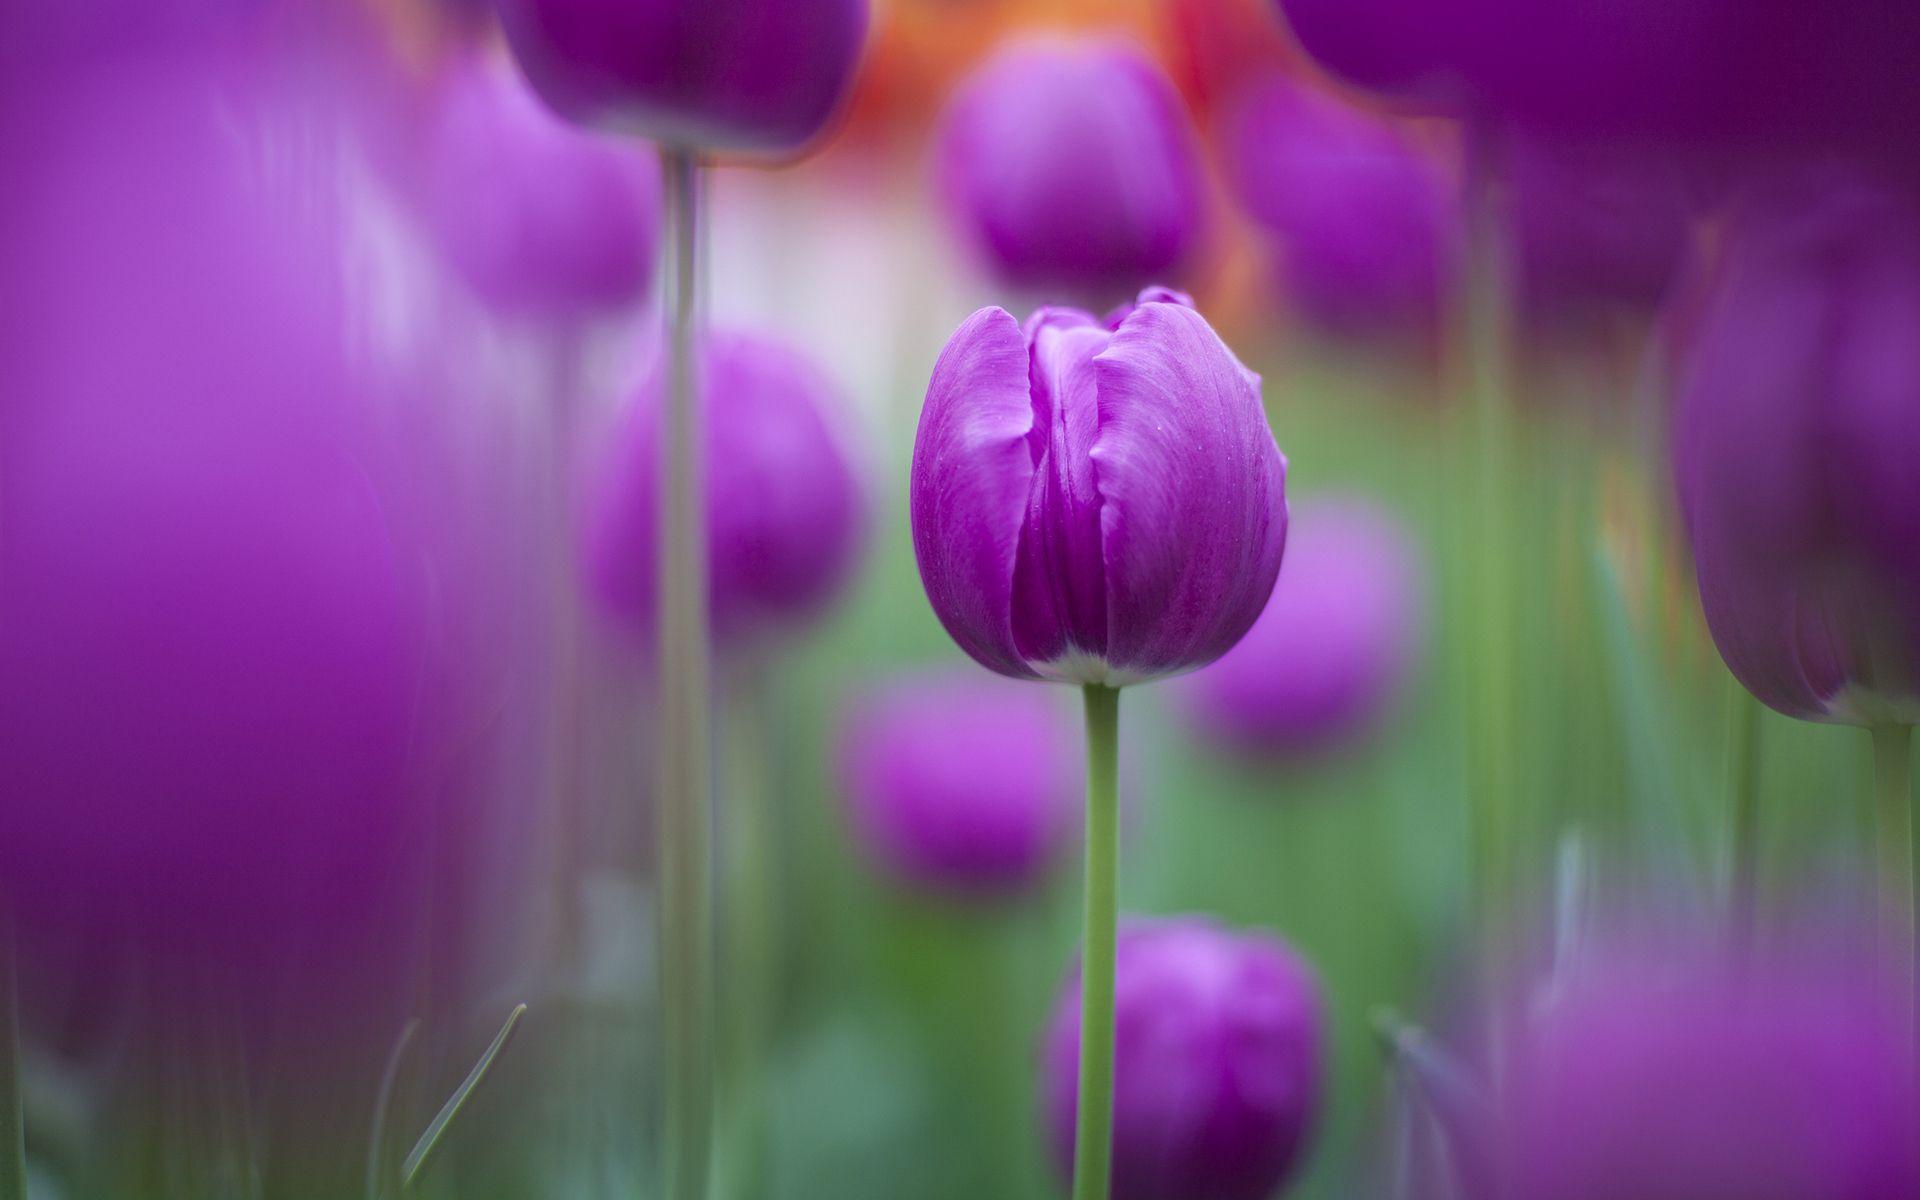 Purple Tulips Wallpaper. Free HD Wallpaper for Desktop, iPad